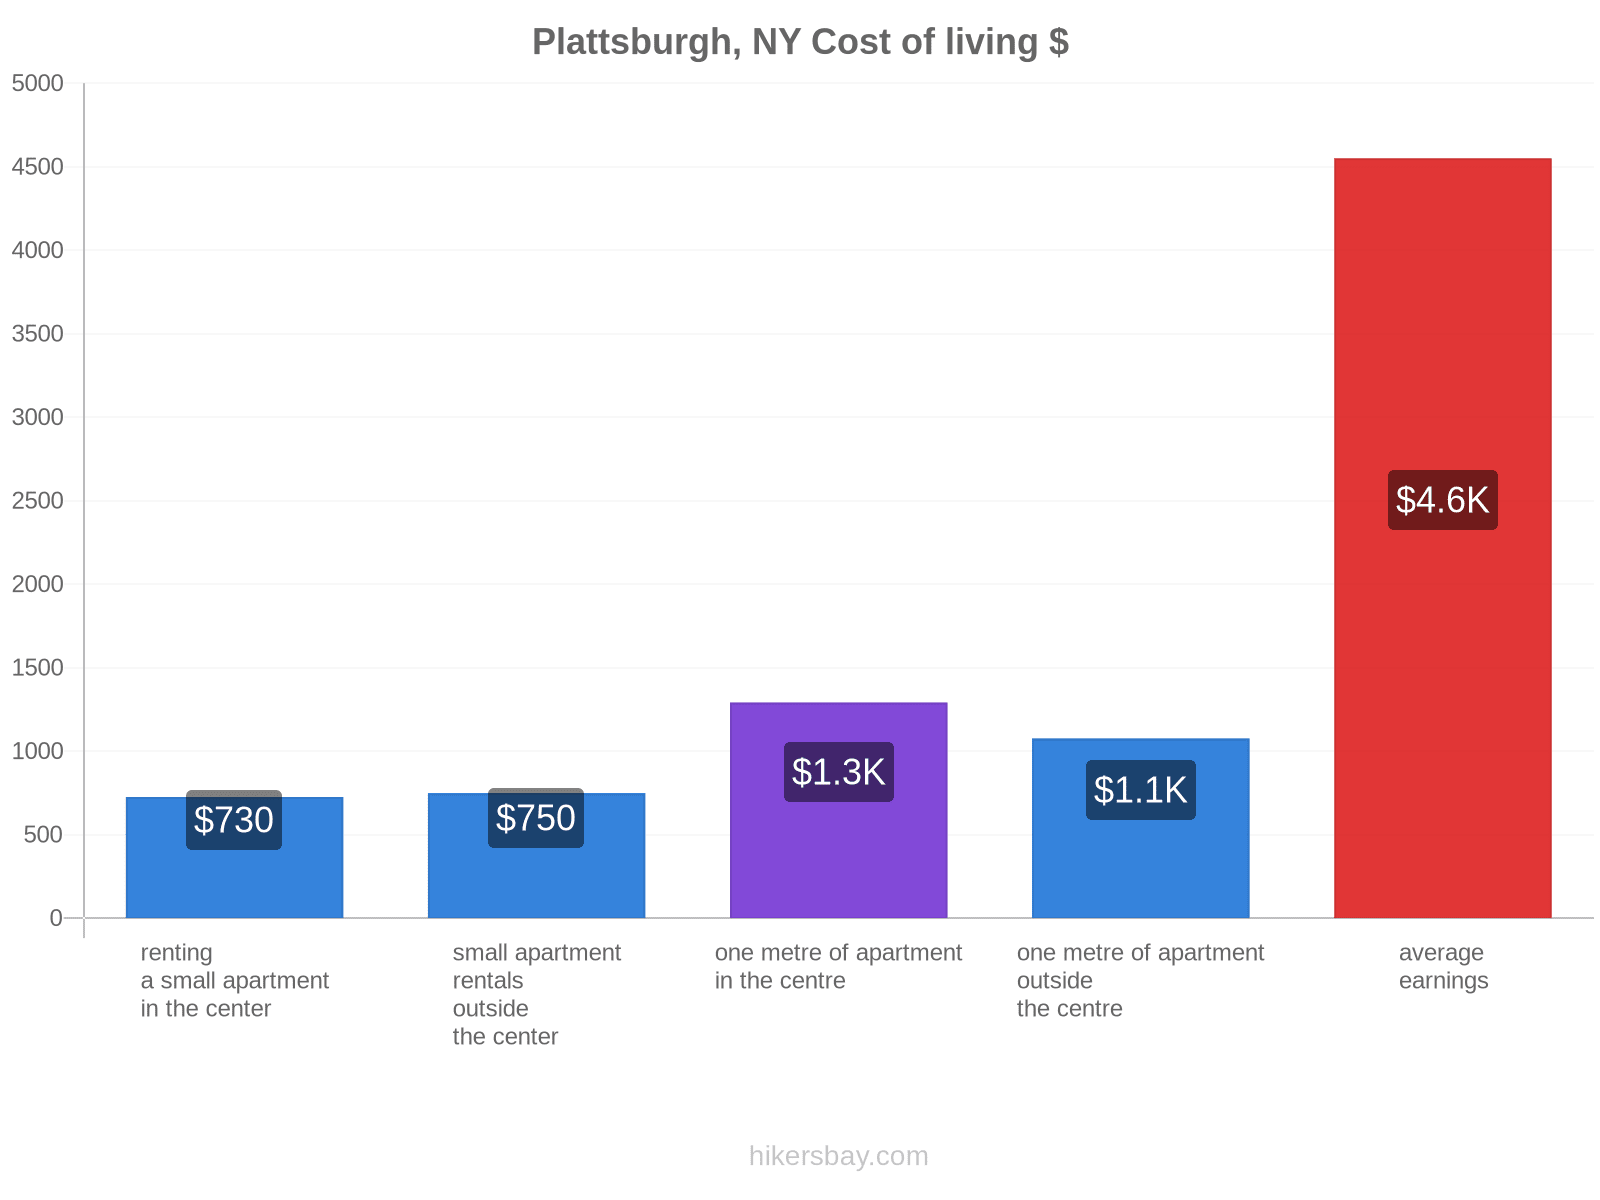 Plattsburgh, NY cost of living hikersbay.com